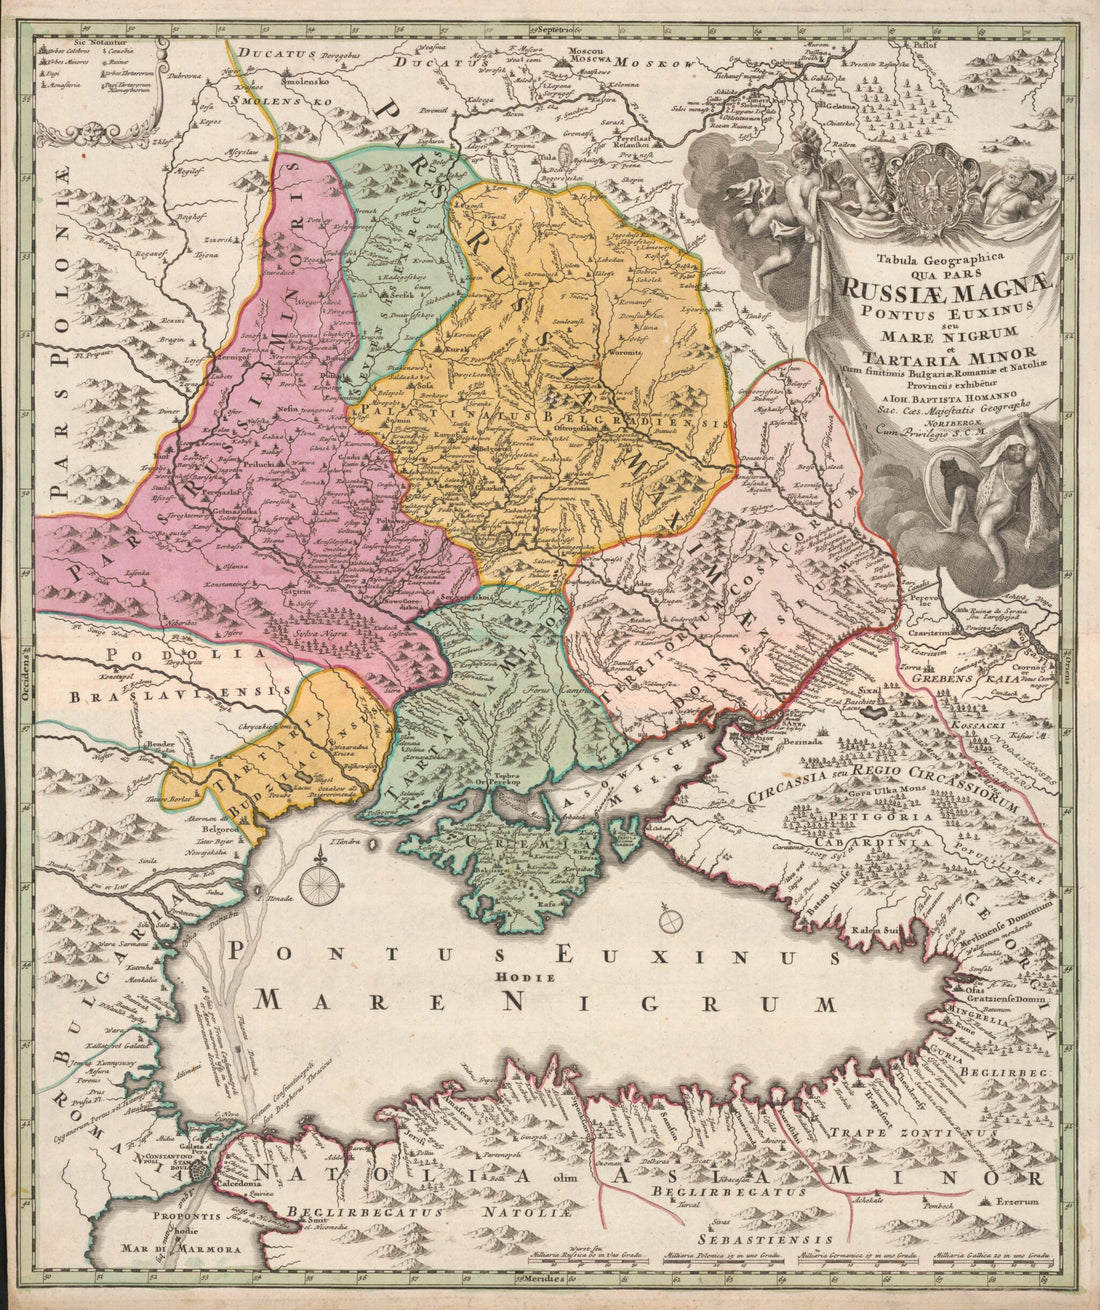 This old map of Tabula Geographica Qua Pars Rusiae Magnae : Pontus Euxinus Seu Mare Nigrum Et Tartaria Minor Cum Finitimis Bulgariae Romaniae Et Natoliae Provinciis from 1720 was created by Johann Baptist Homann in 1720